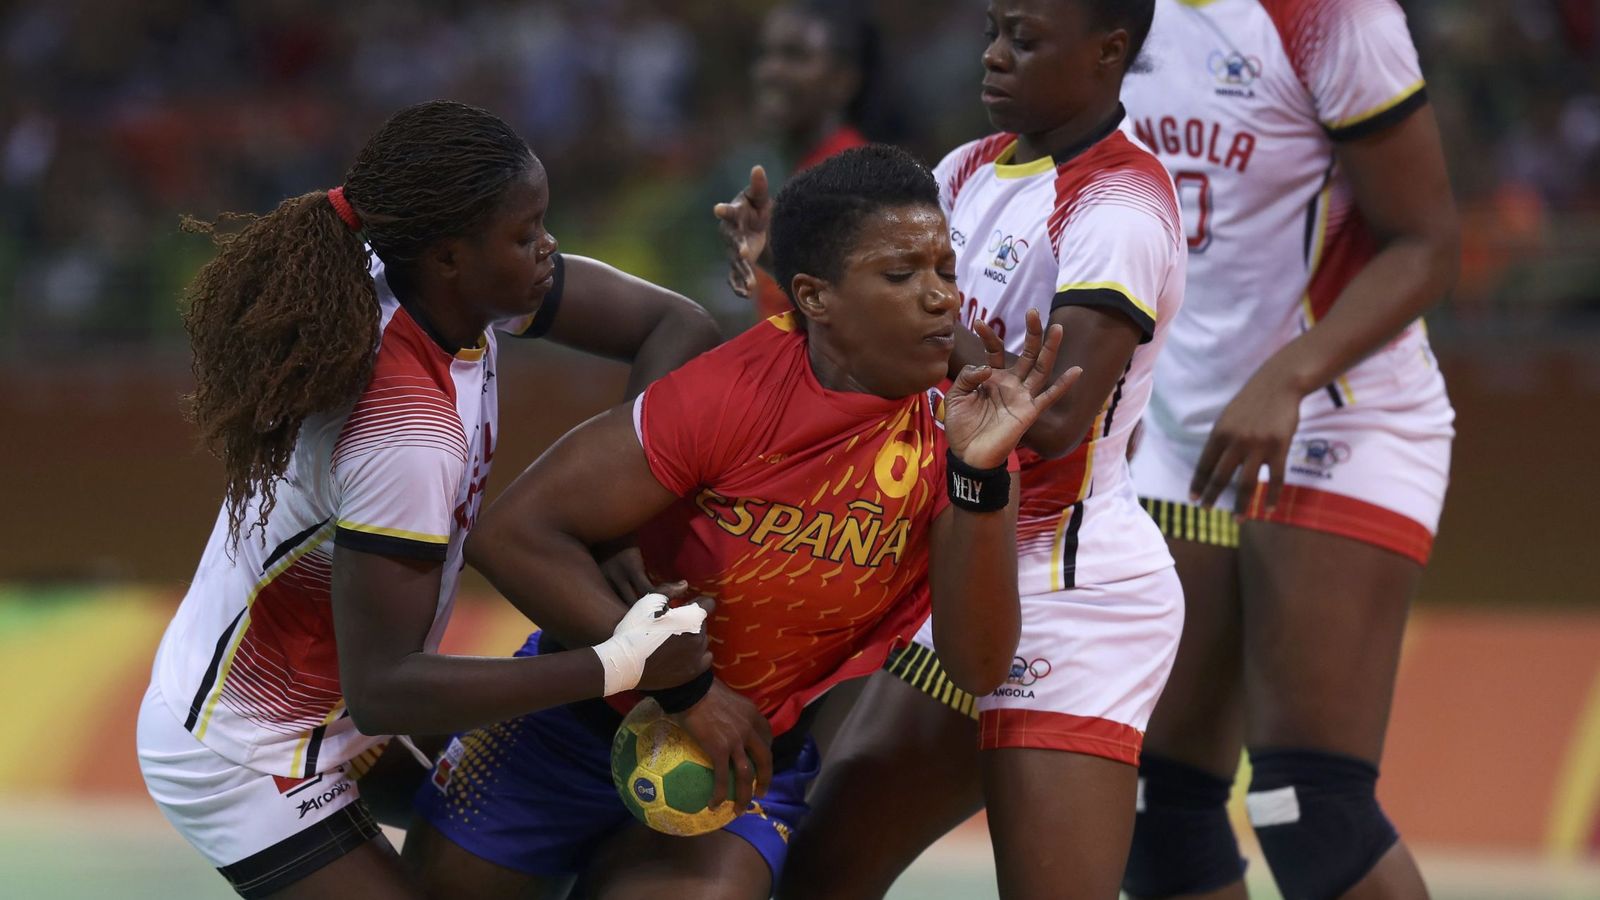 Foto: Nely Carla Alberto sufrió una lesión contra Angola. (Damir Sagolj/Reuters)